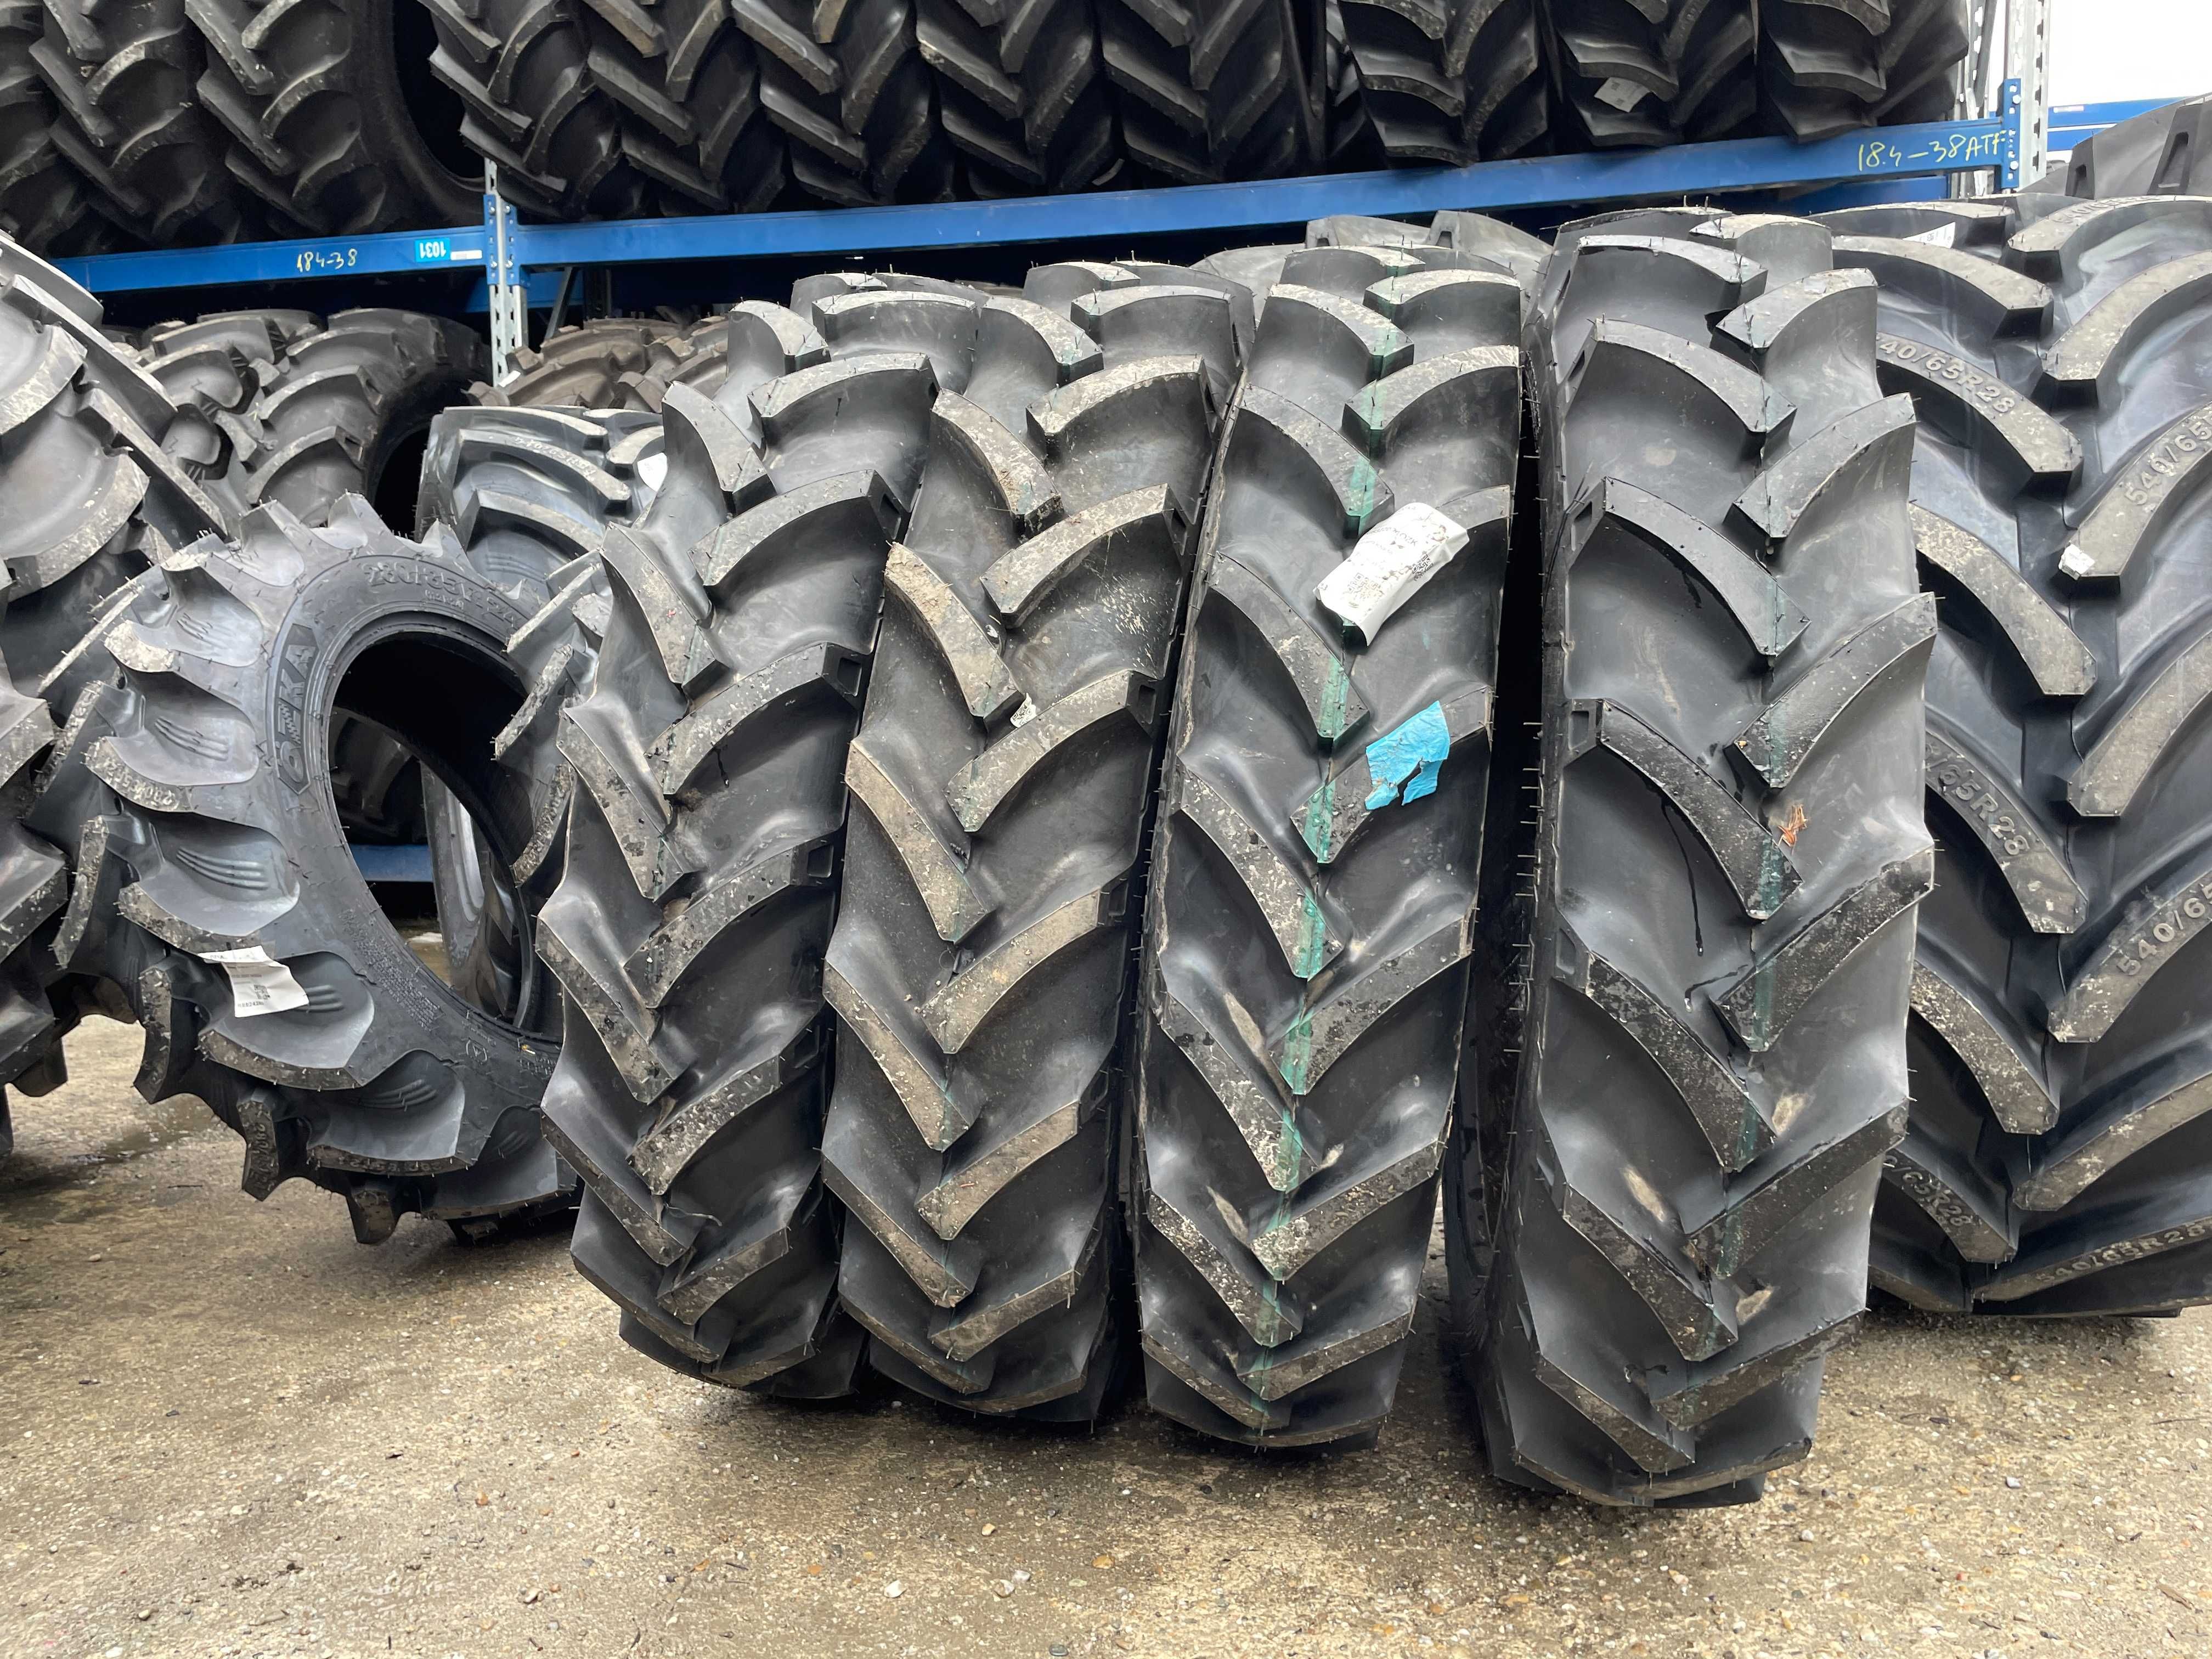 9.5-32 cu 8 pliuri anvelope noi marca OZKA pentru tractor spate